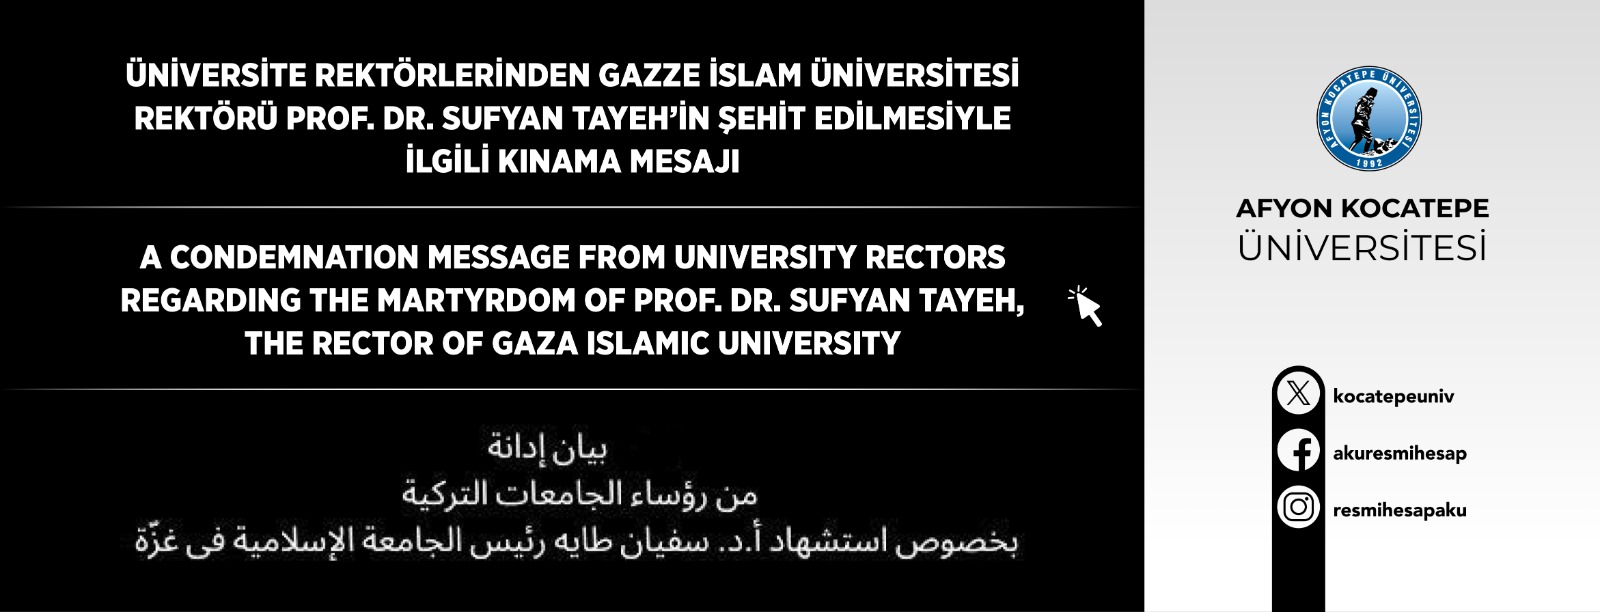 Gazze İslam Üniversitesi